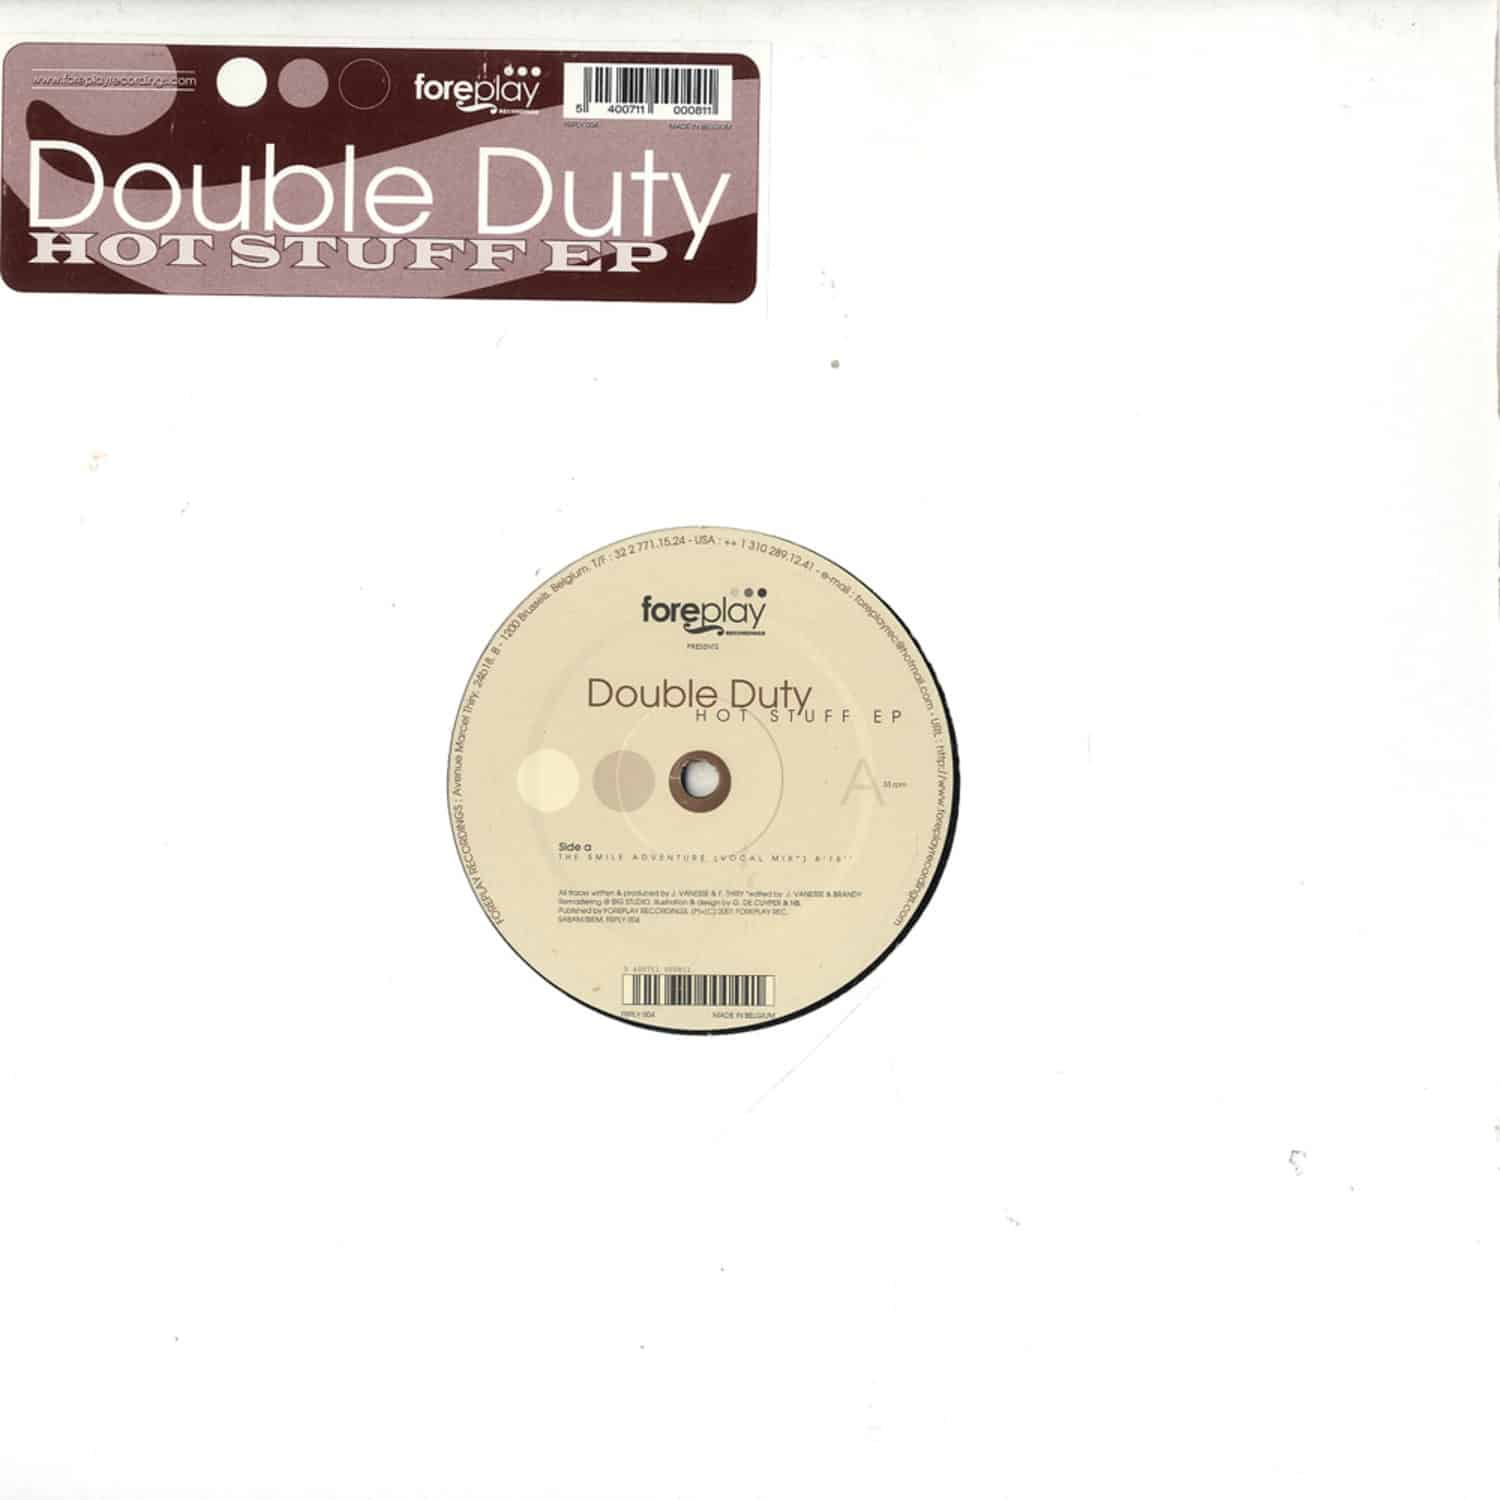 Double Duty - HOT STUFF EP